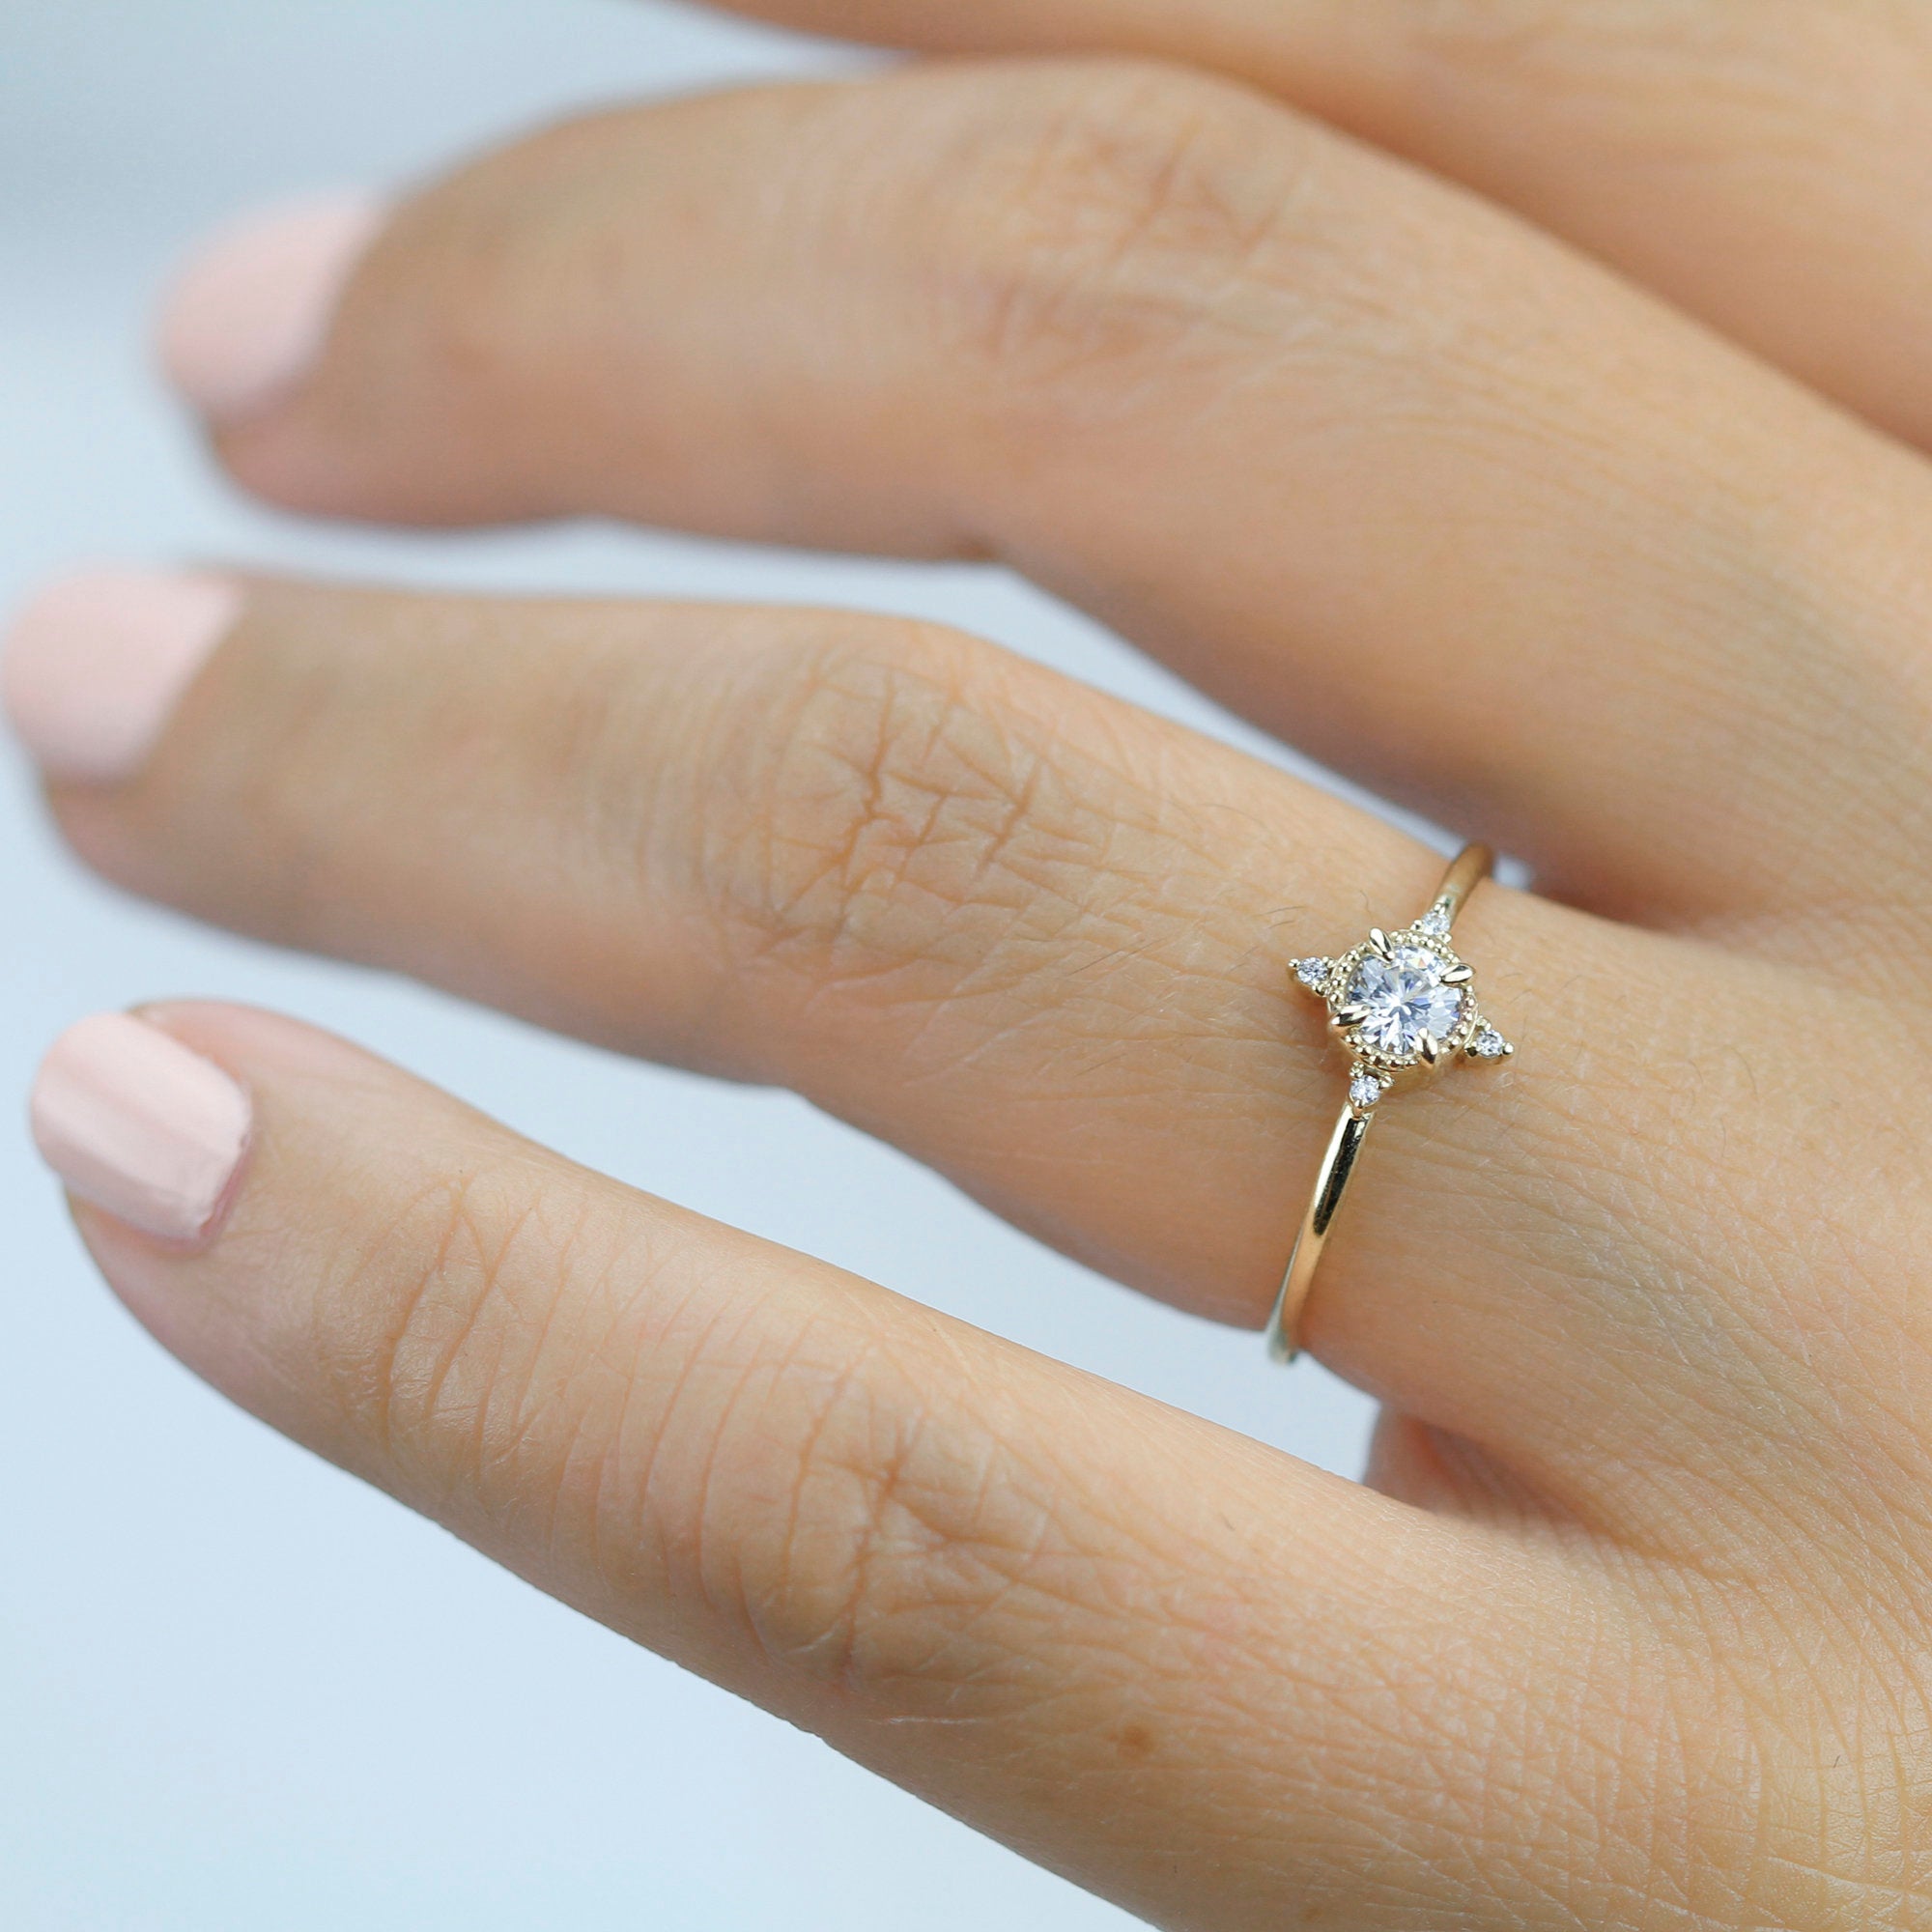 21 Beautiful Engagement Rings For Men | Lisa Robin